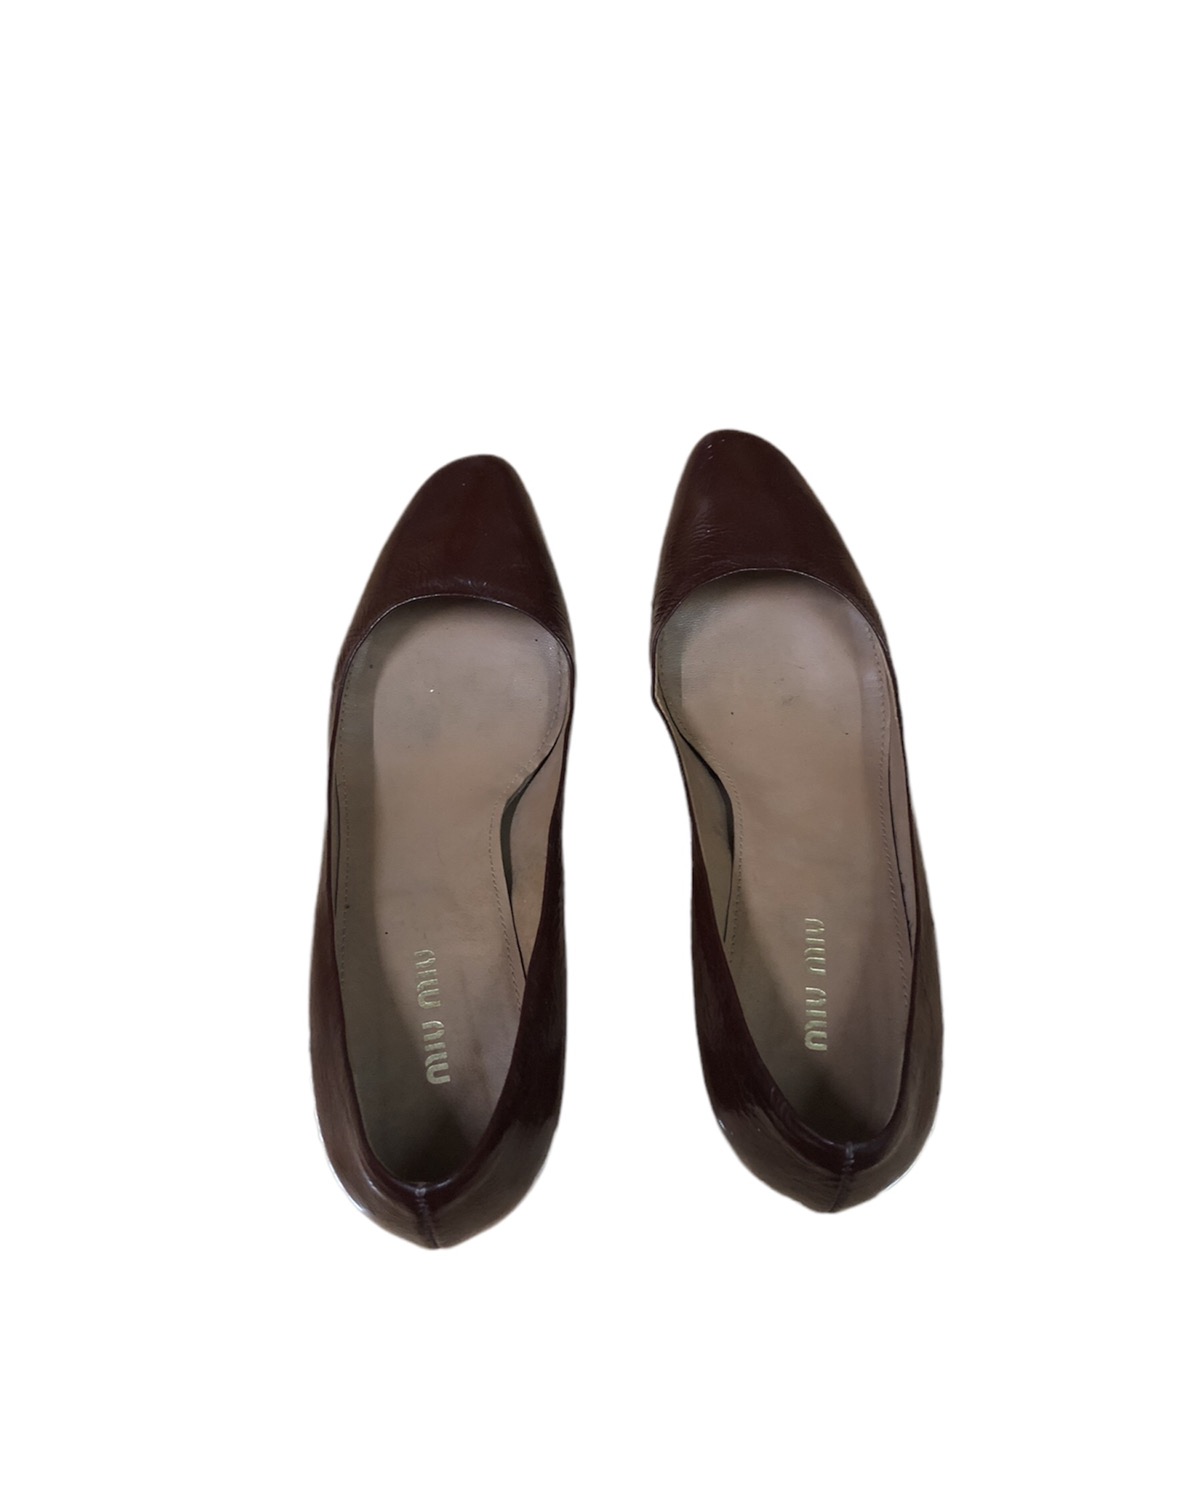 Miu Miu heels Made in Italy - 5